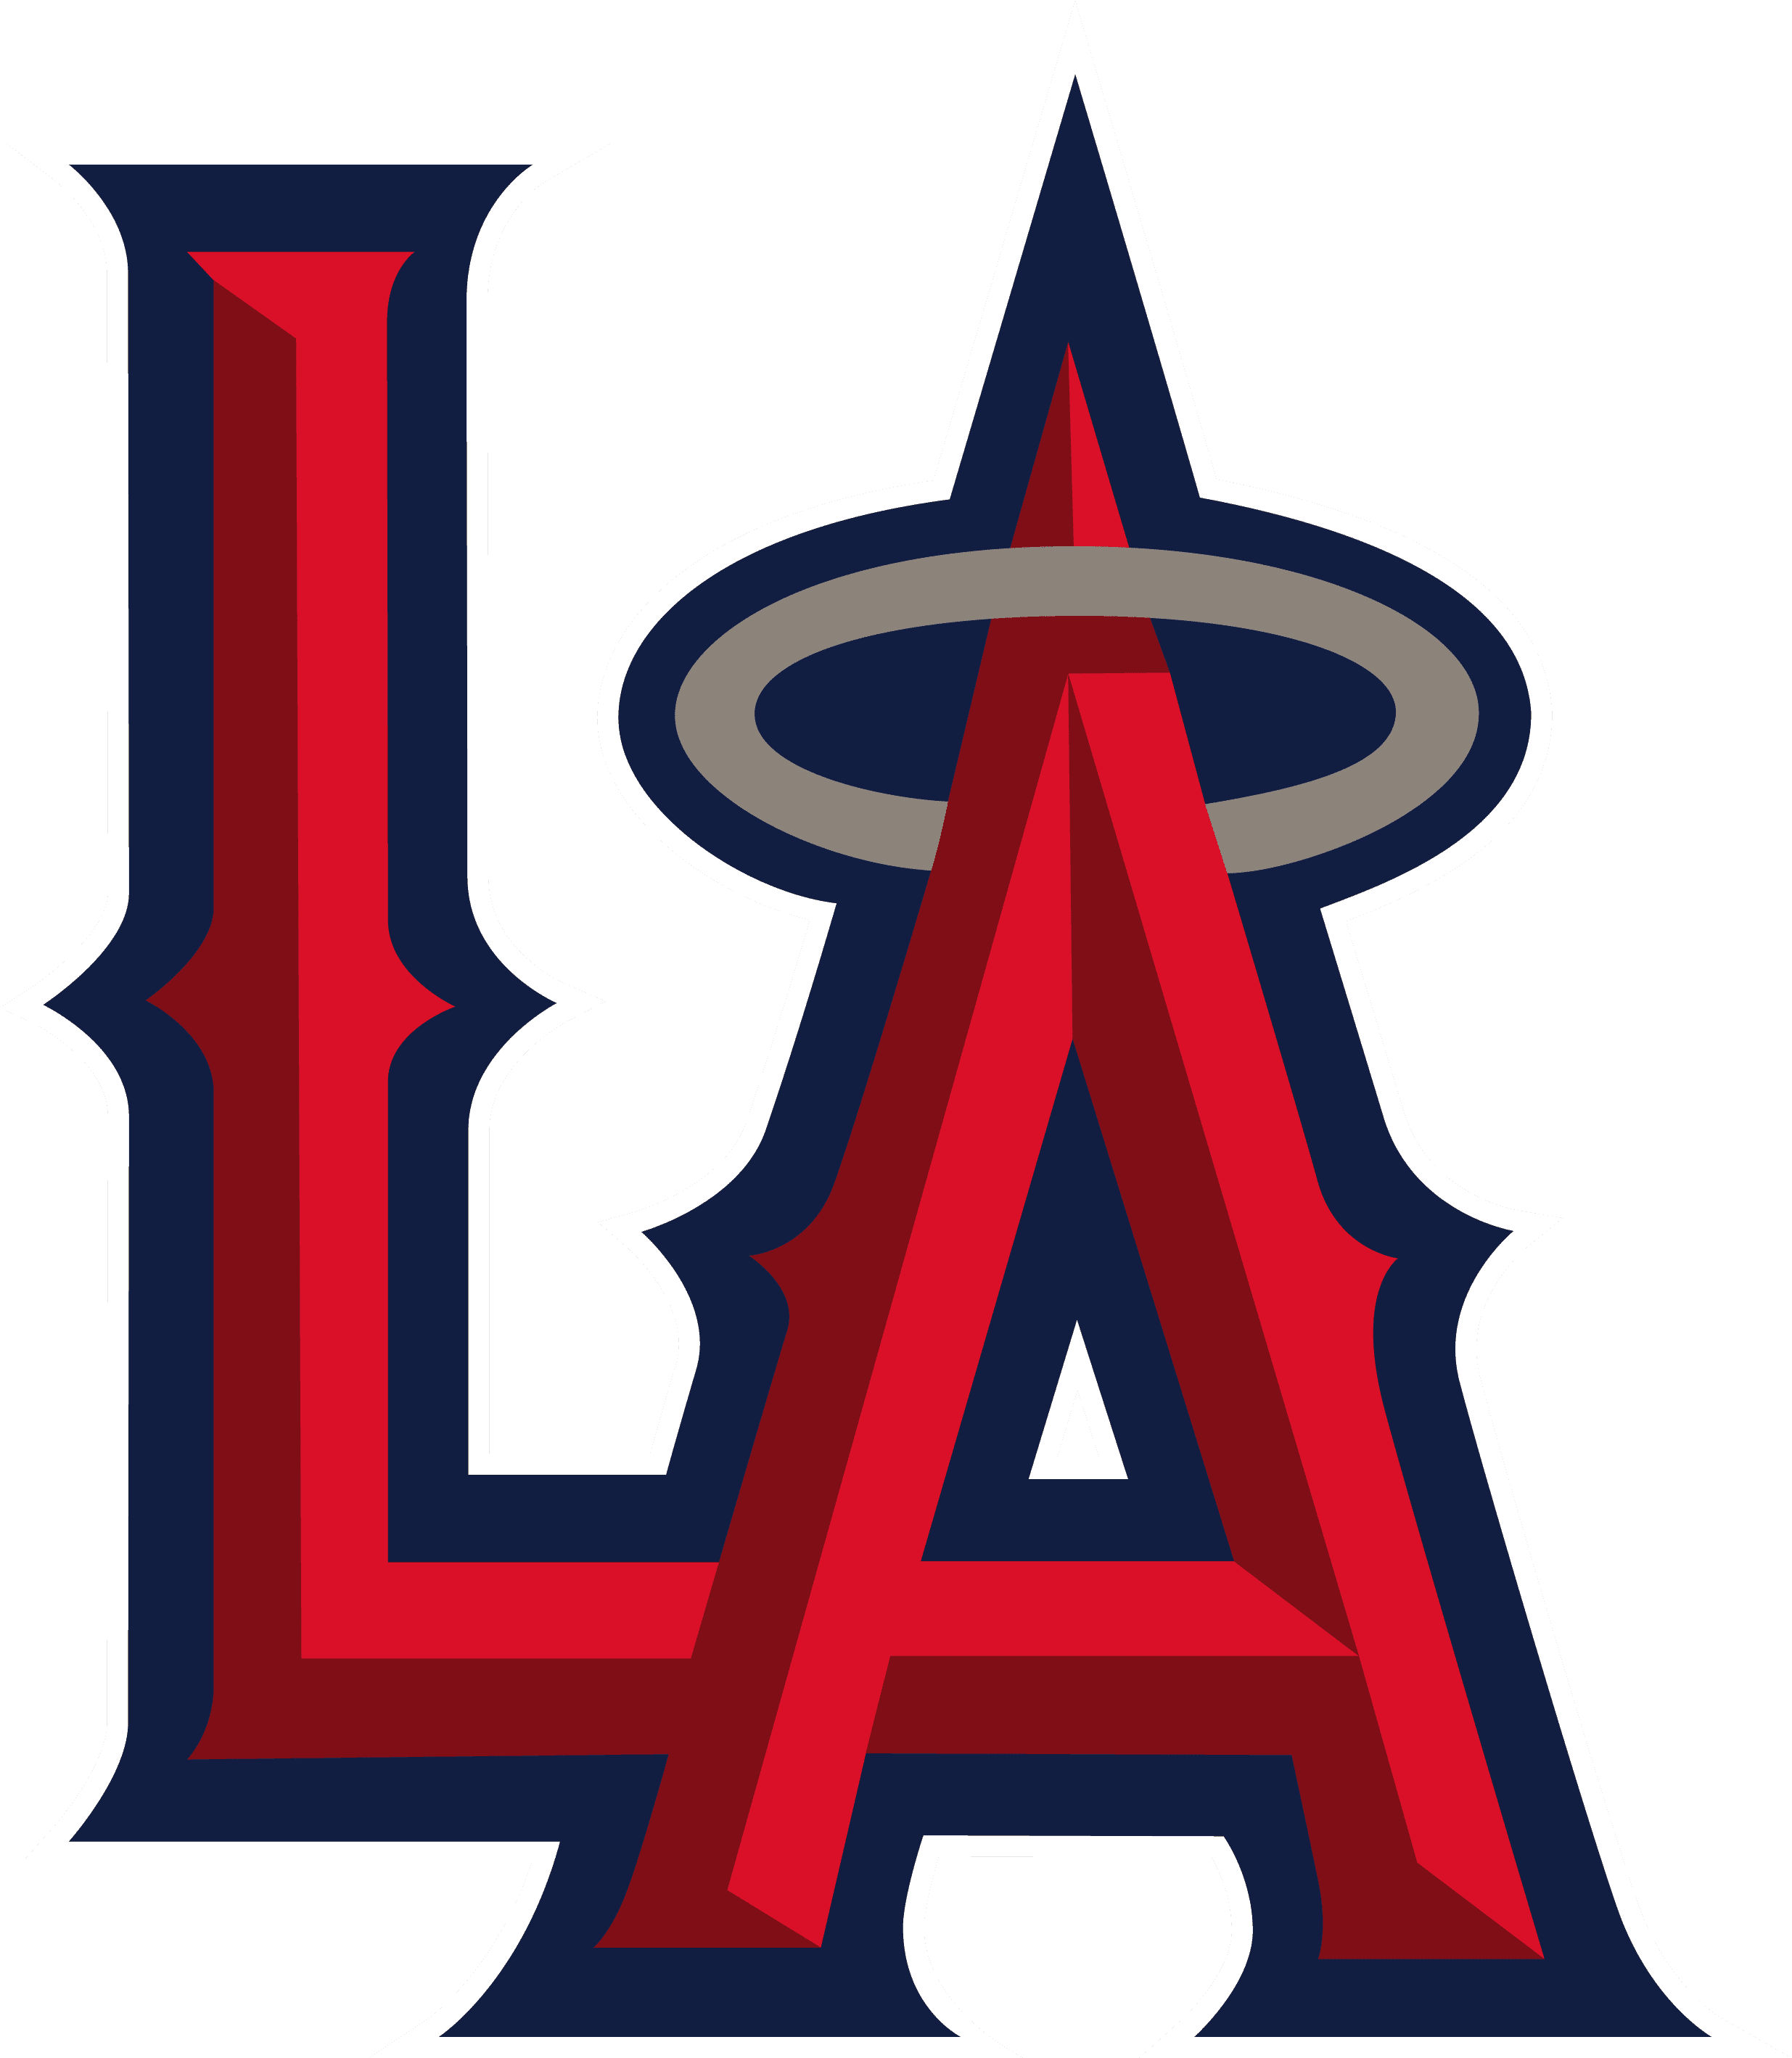 MLB Logo Los Angeles Angels, Los Angeles Angels SVG, Vector Los